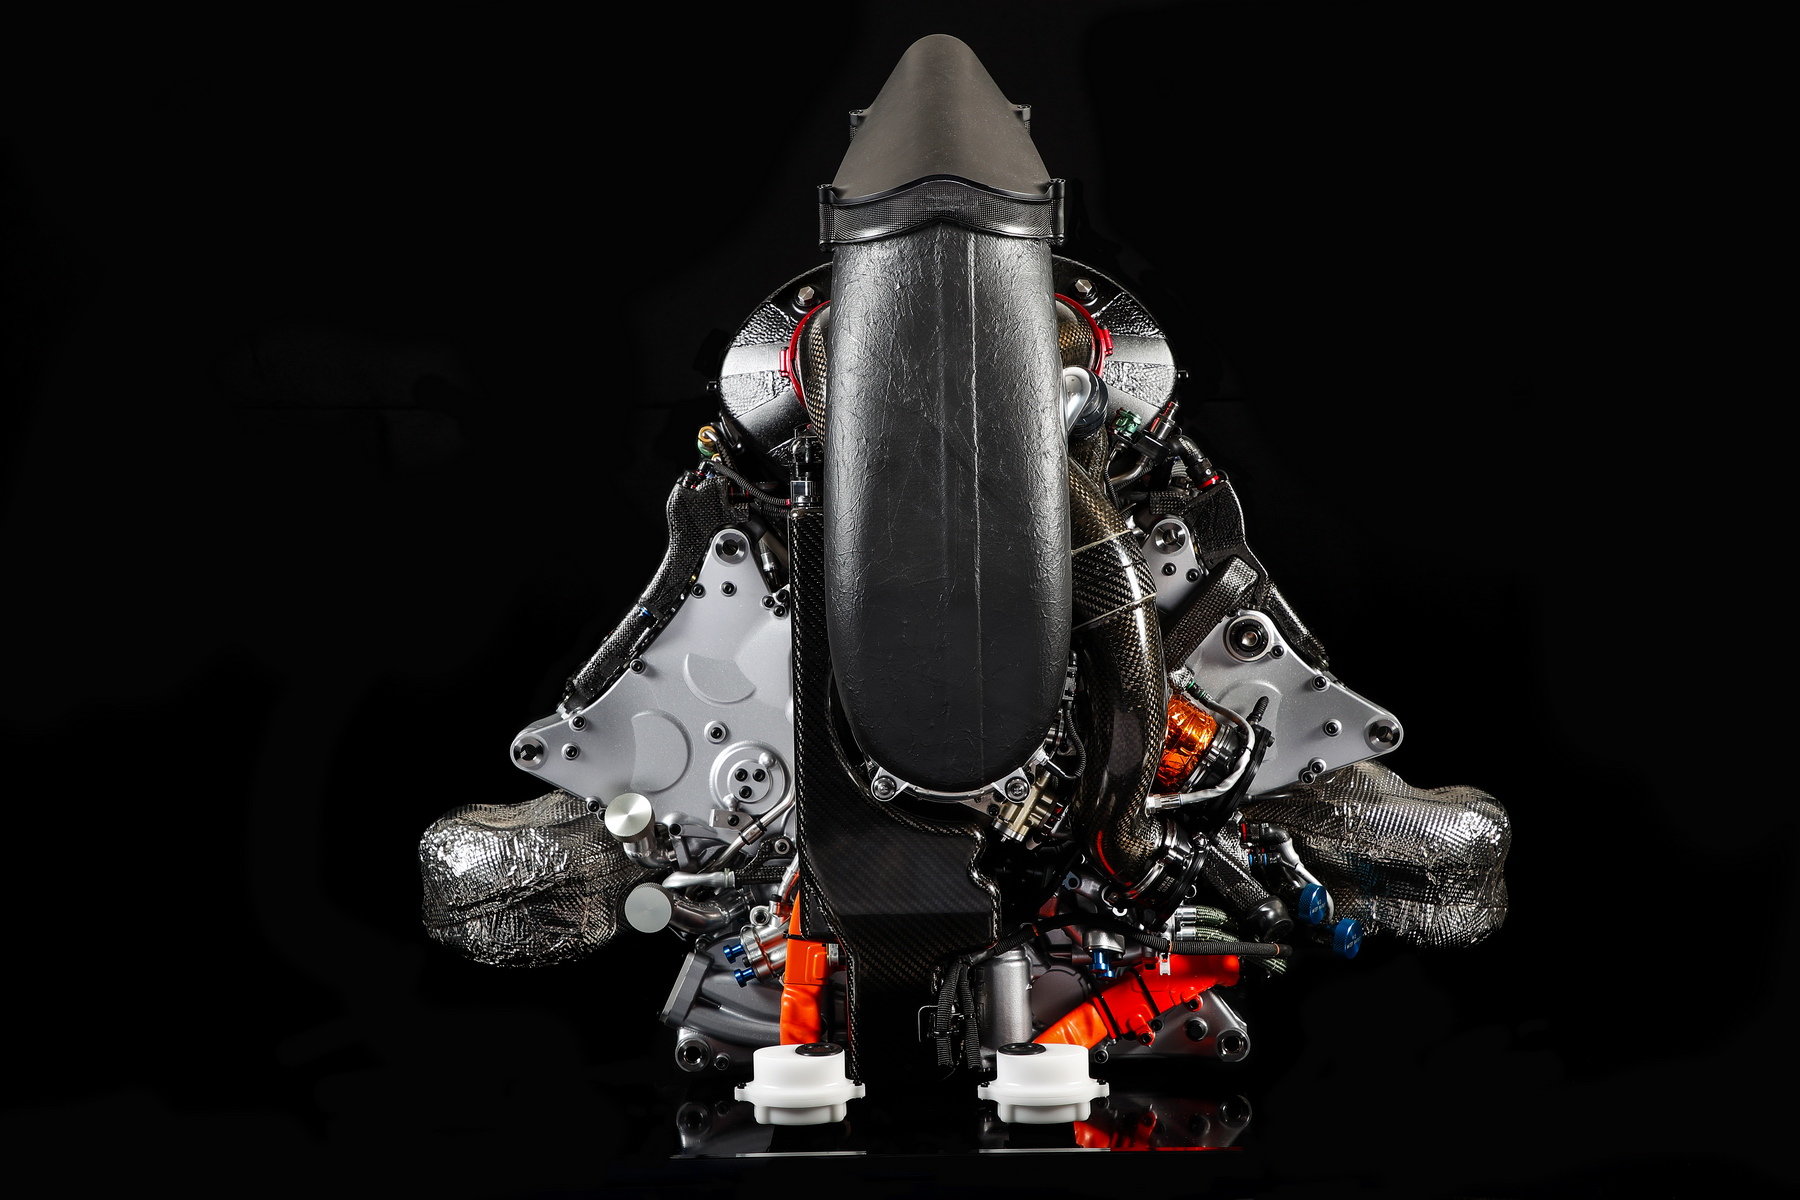 Pohonná jednotka Honda RA617H, která v sezóně 2017 poháněla McLaren MCL32